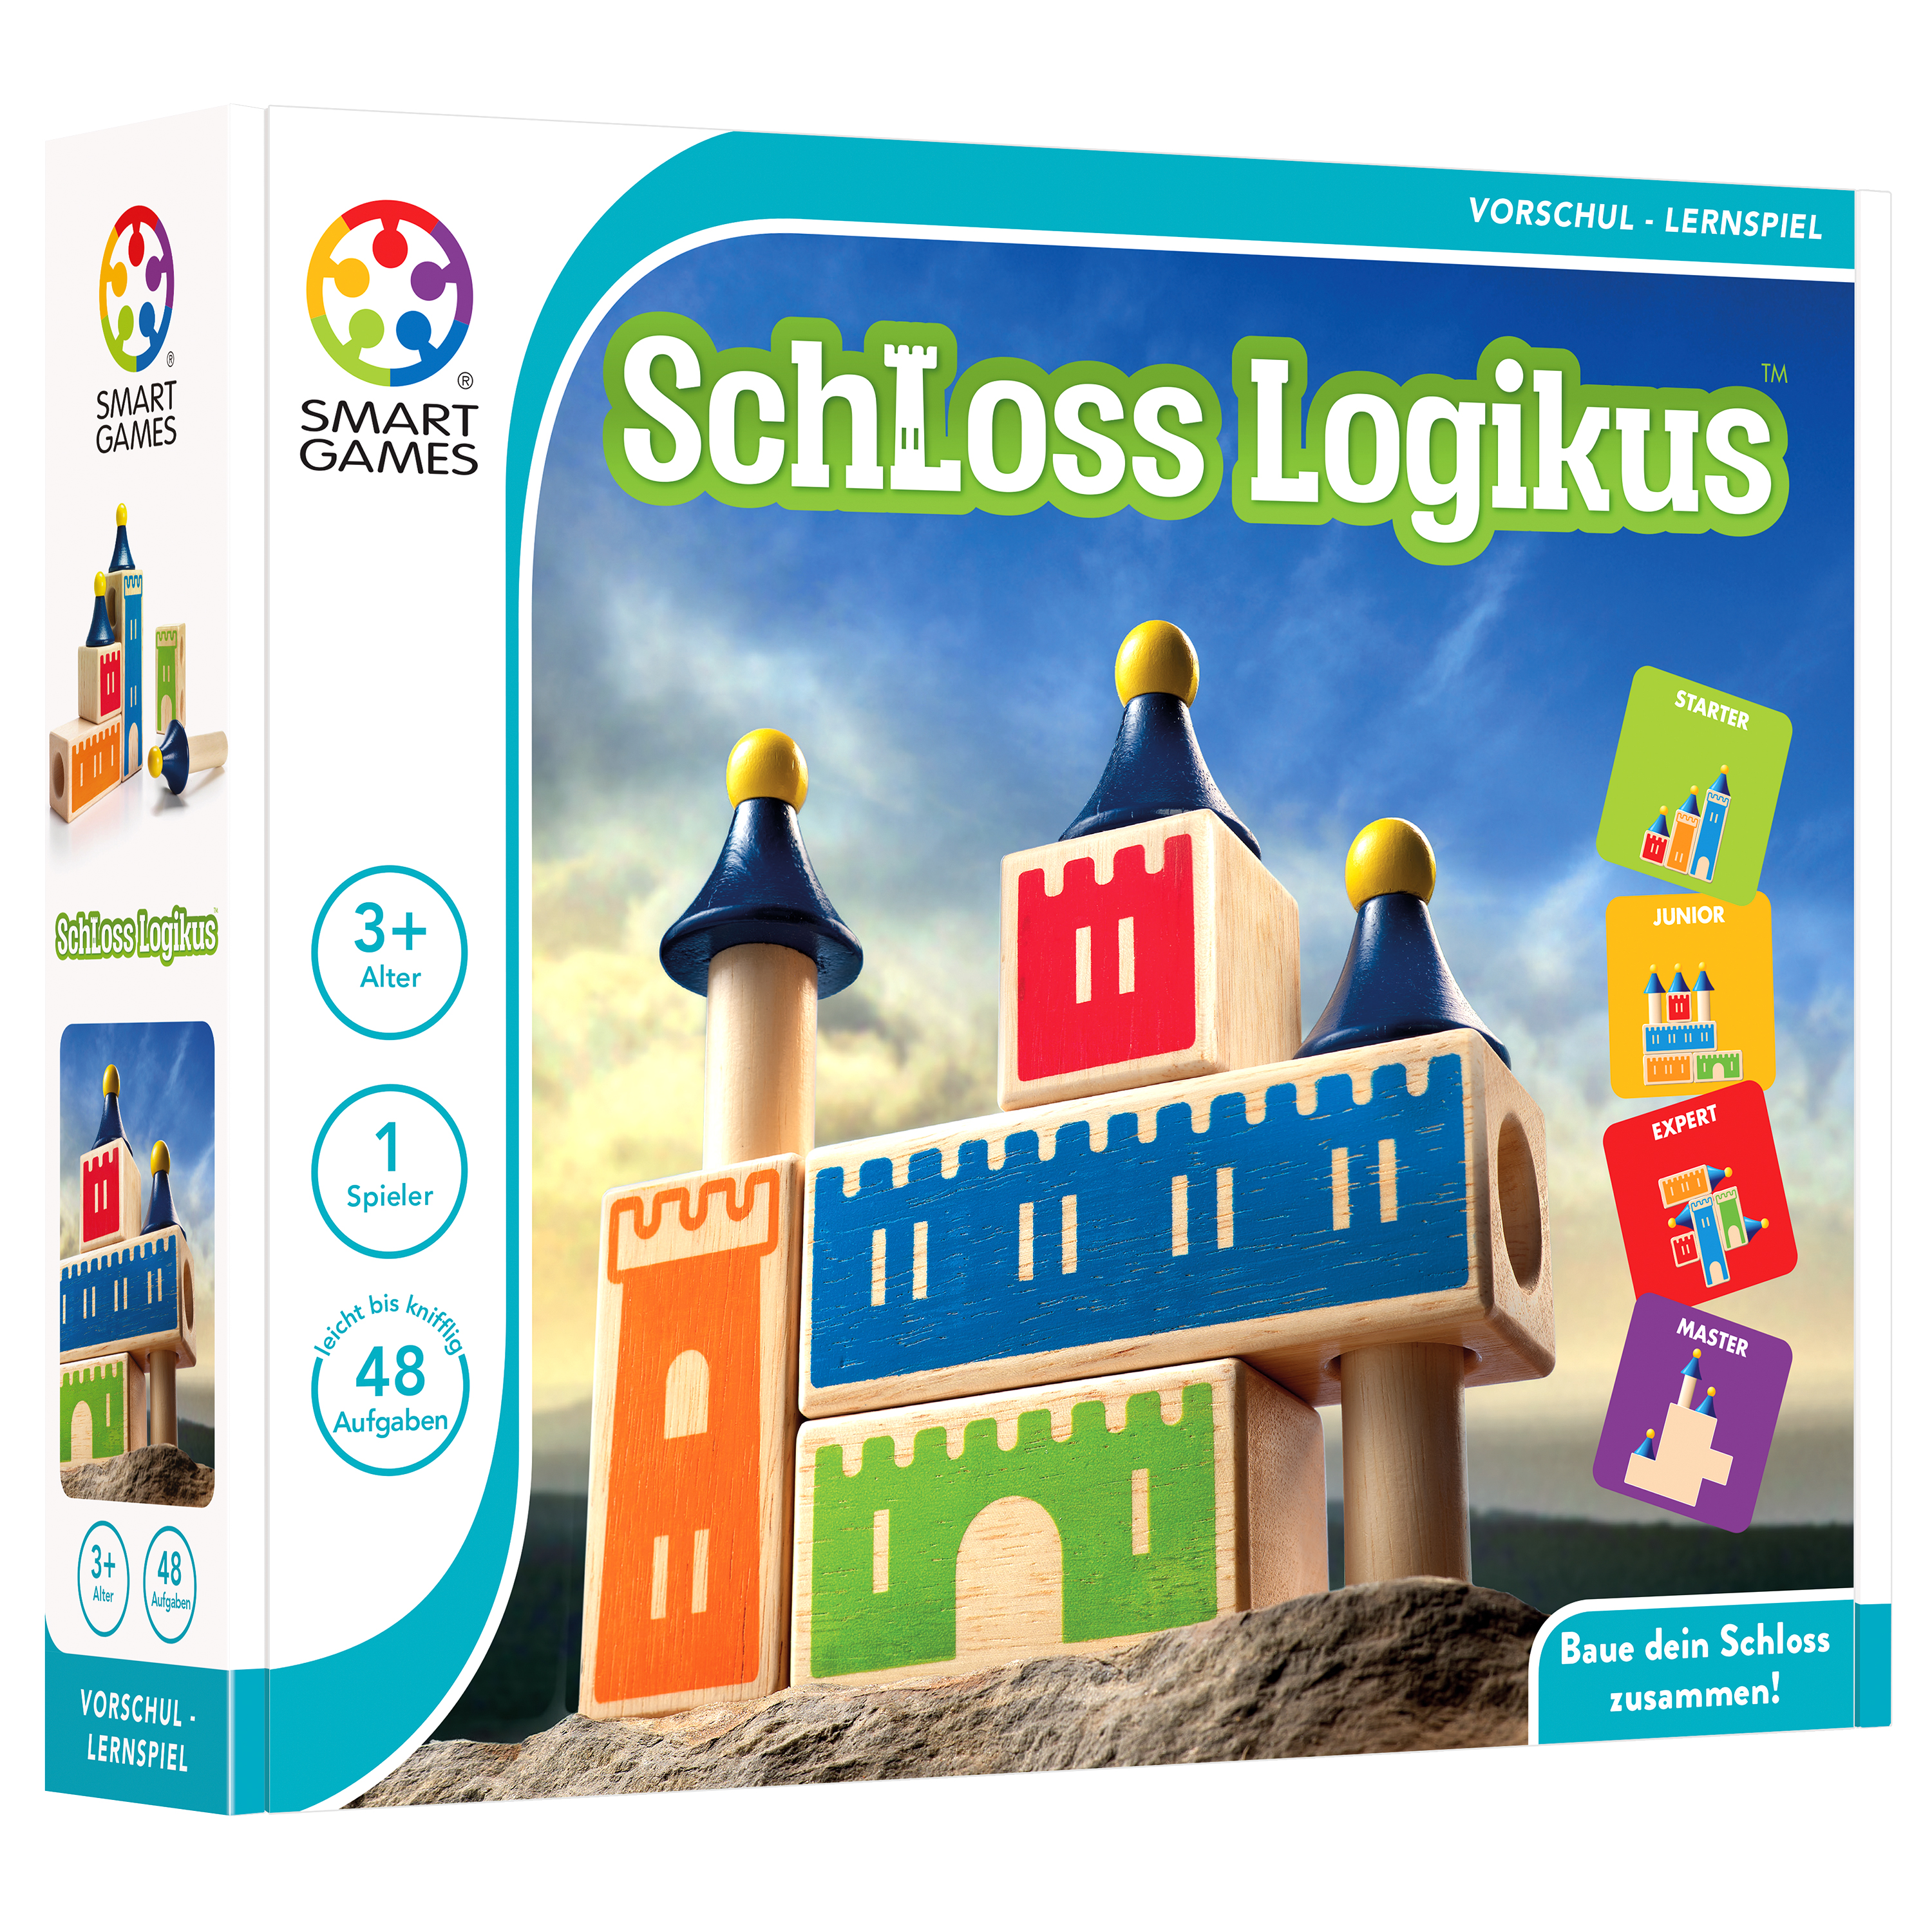 SMART GAMES Schloss Logikus